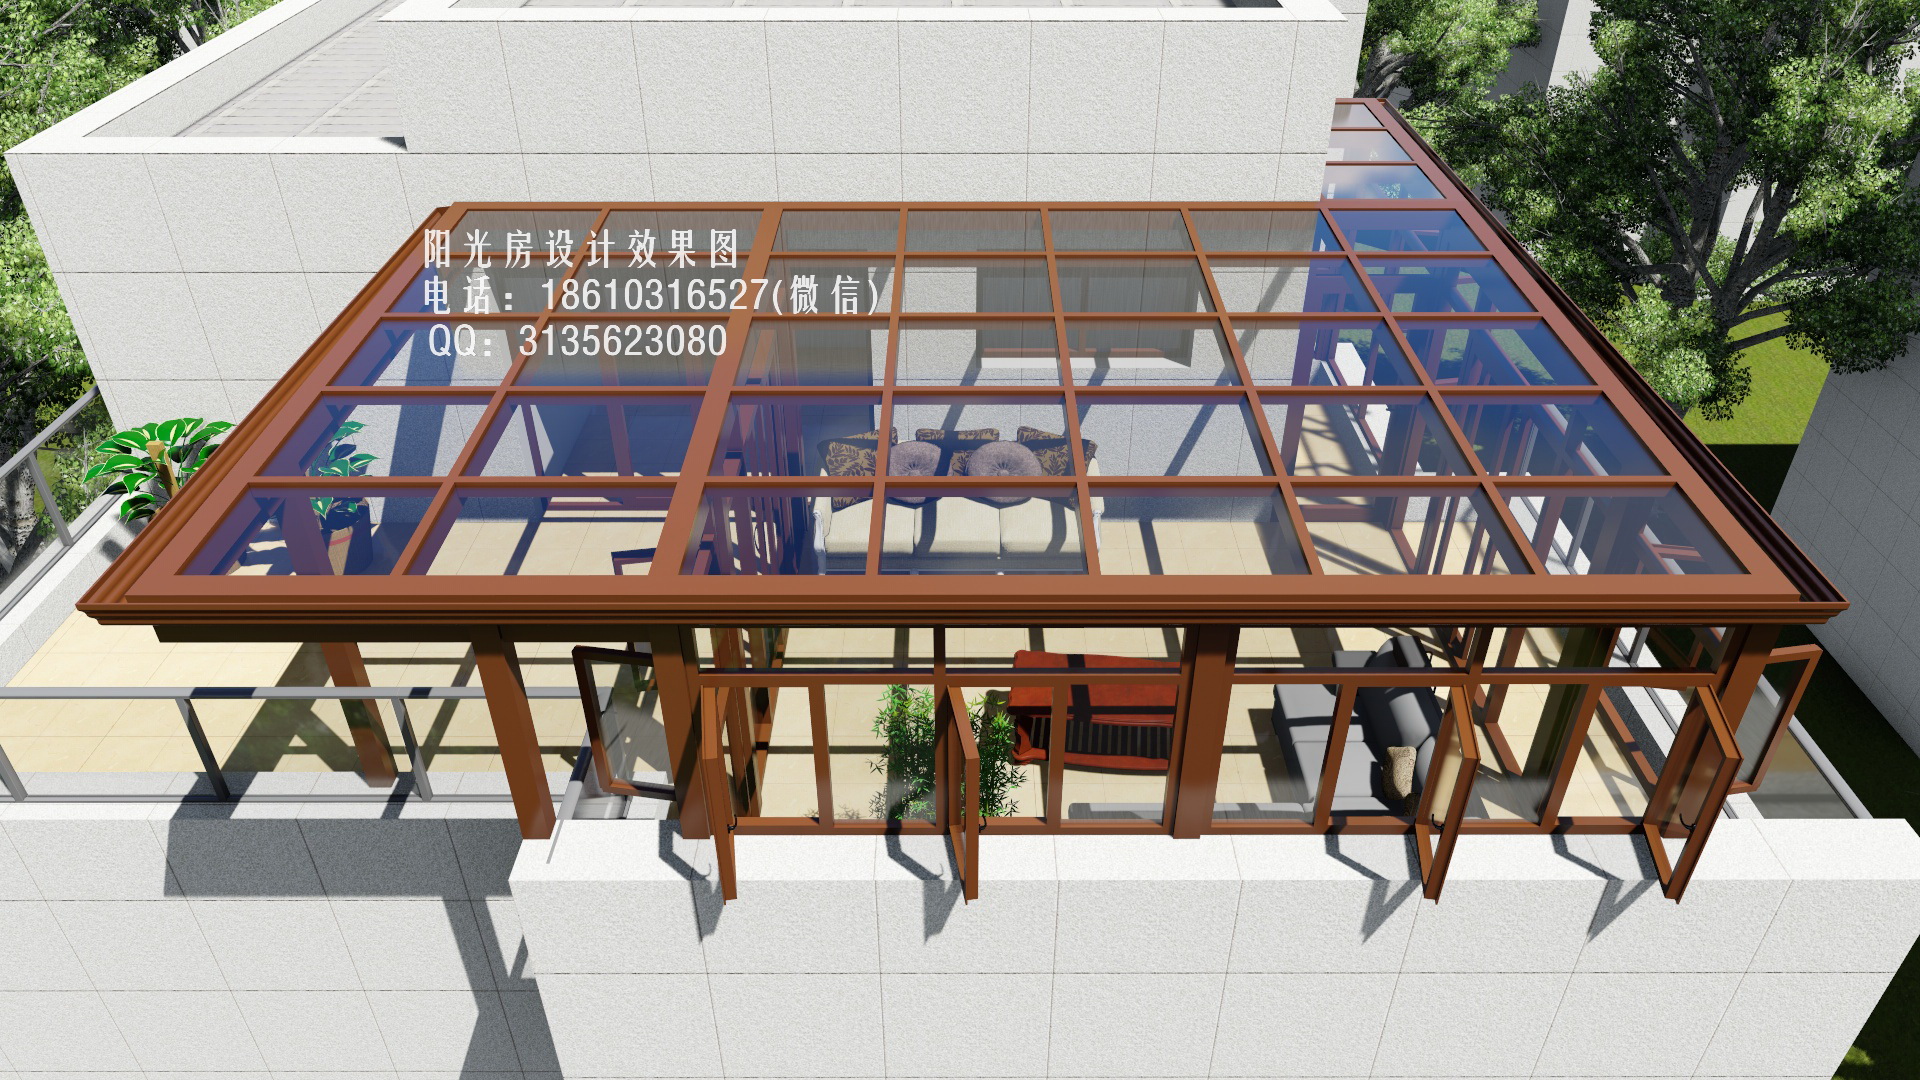 D5314阳光房设计效果图 | 火星网－中国数字艺术第一门户